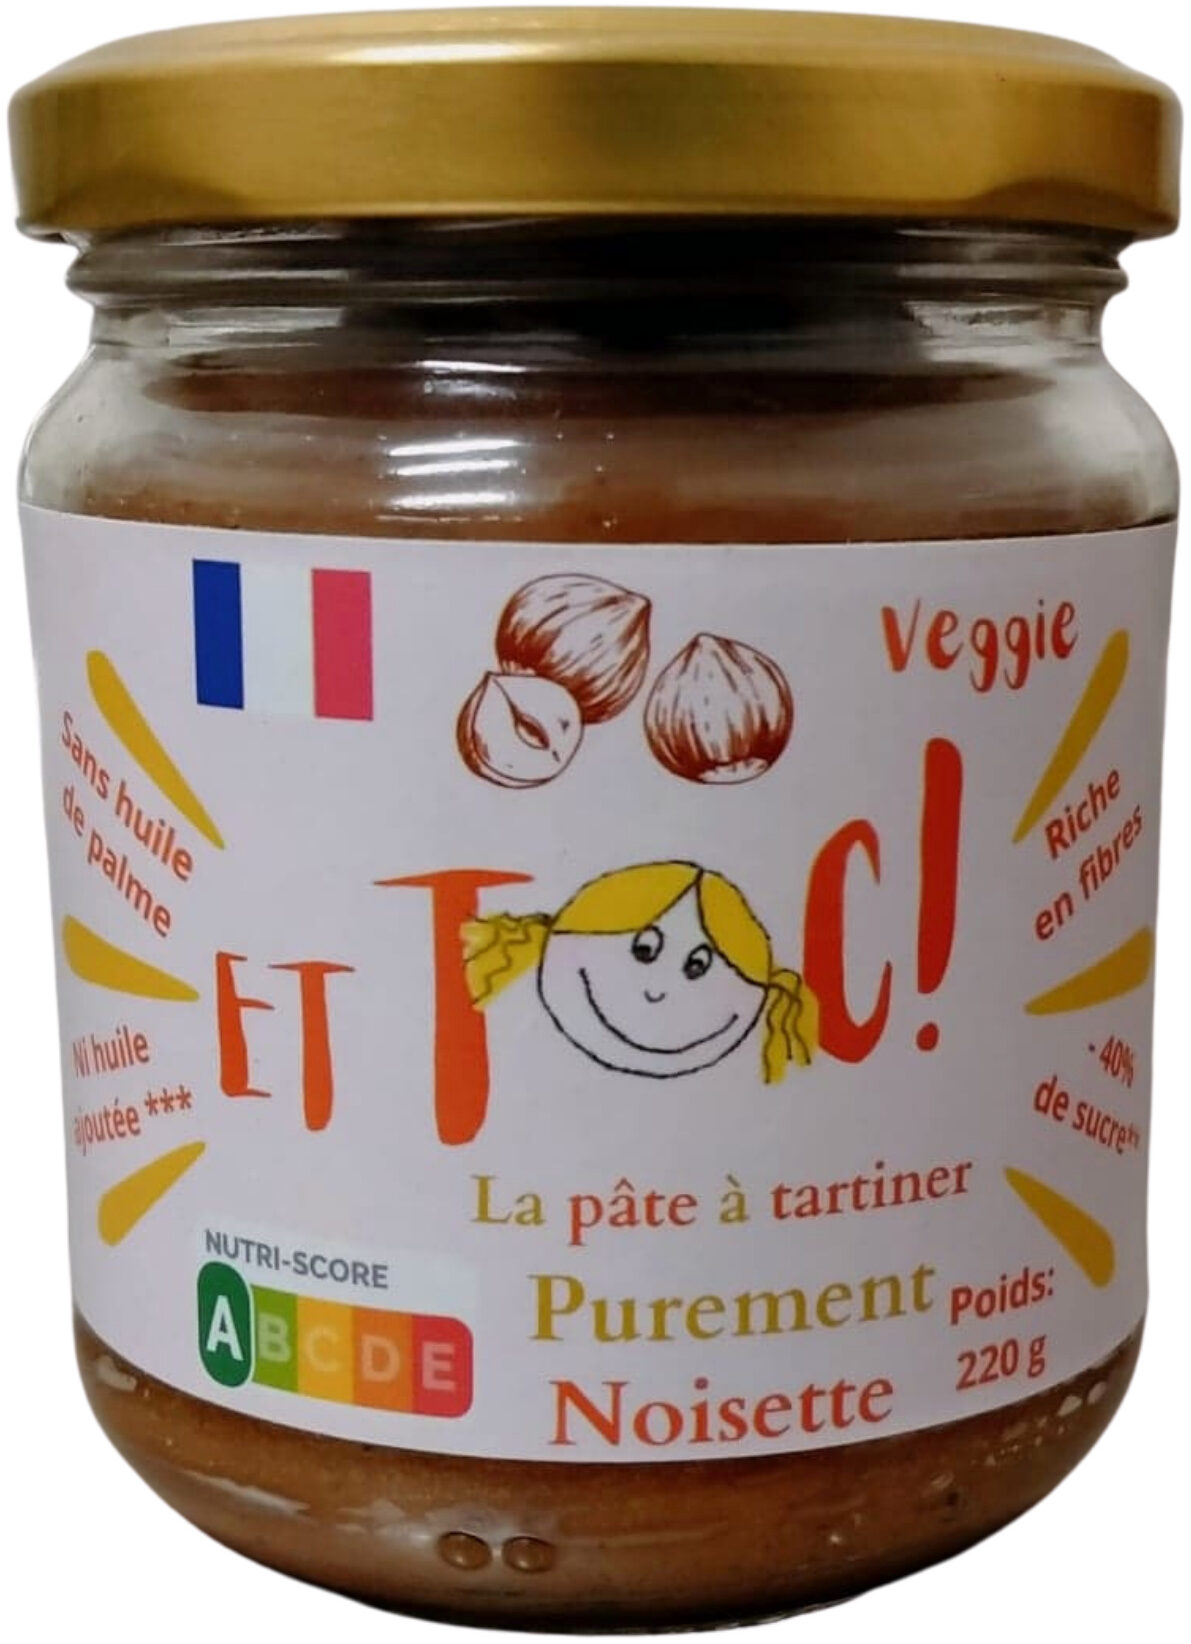 ET TOC! Purement noisette - Product - fr